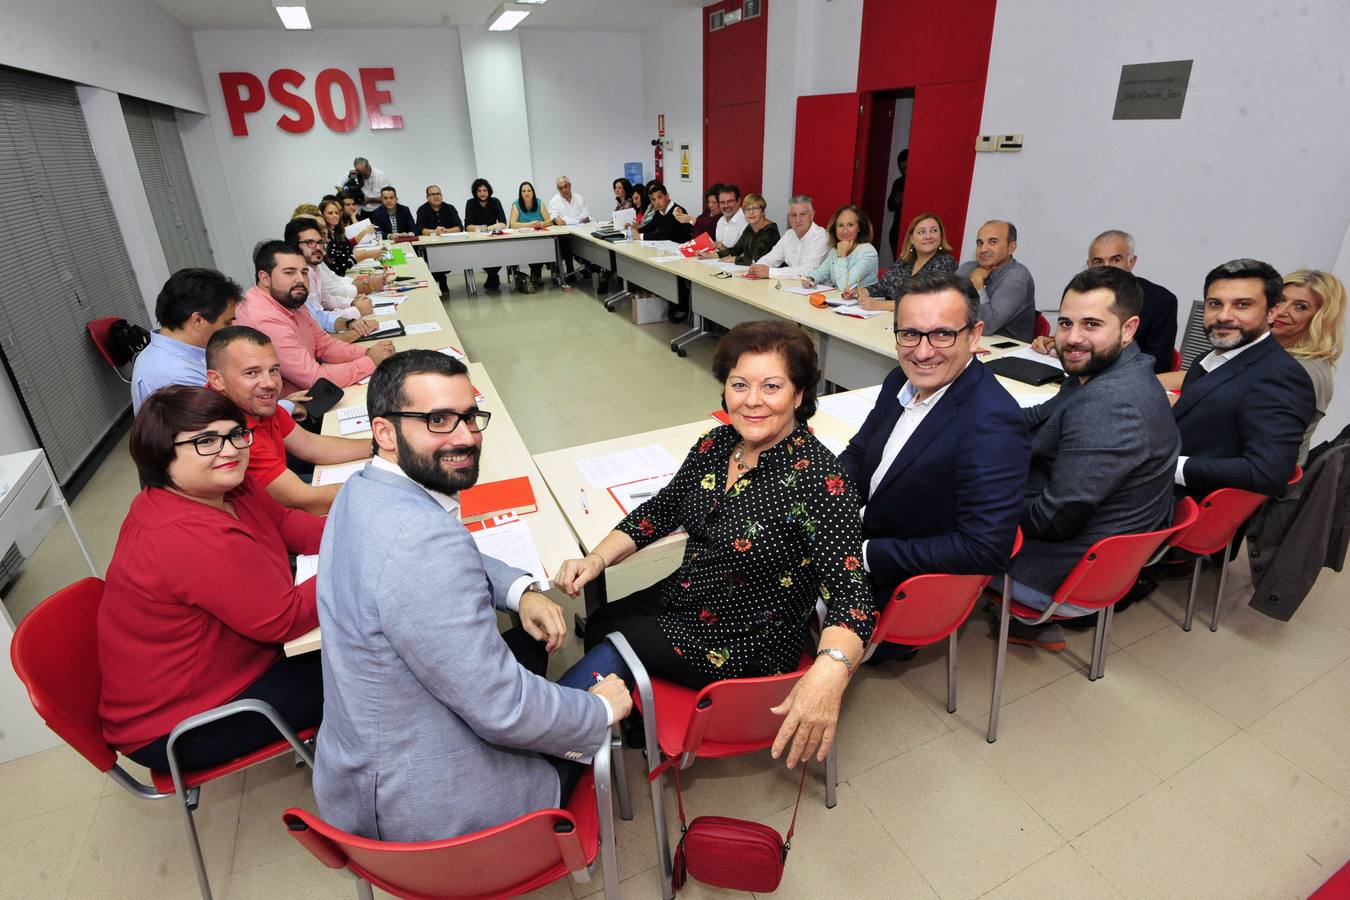 La nueva ejecutiva socialista reordena la dirección del grupo parlamentario en su primera reunión tras el congreso regional